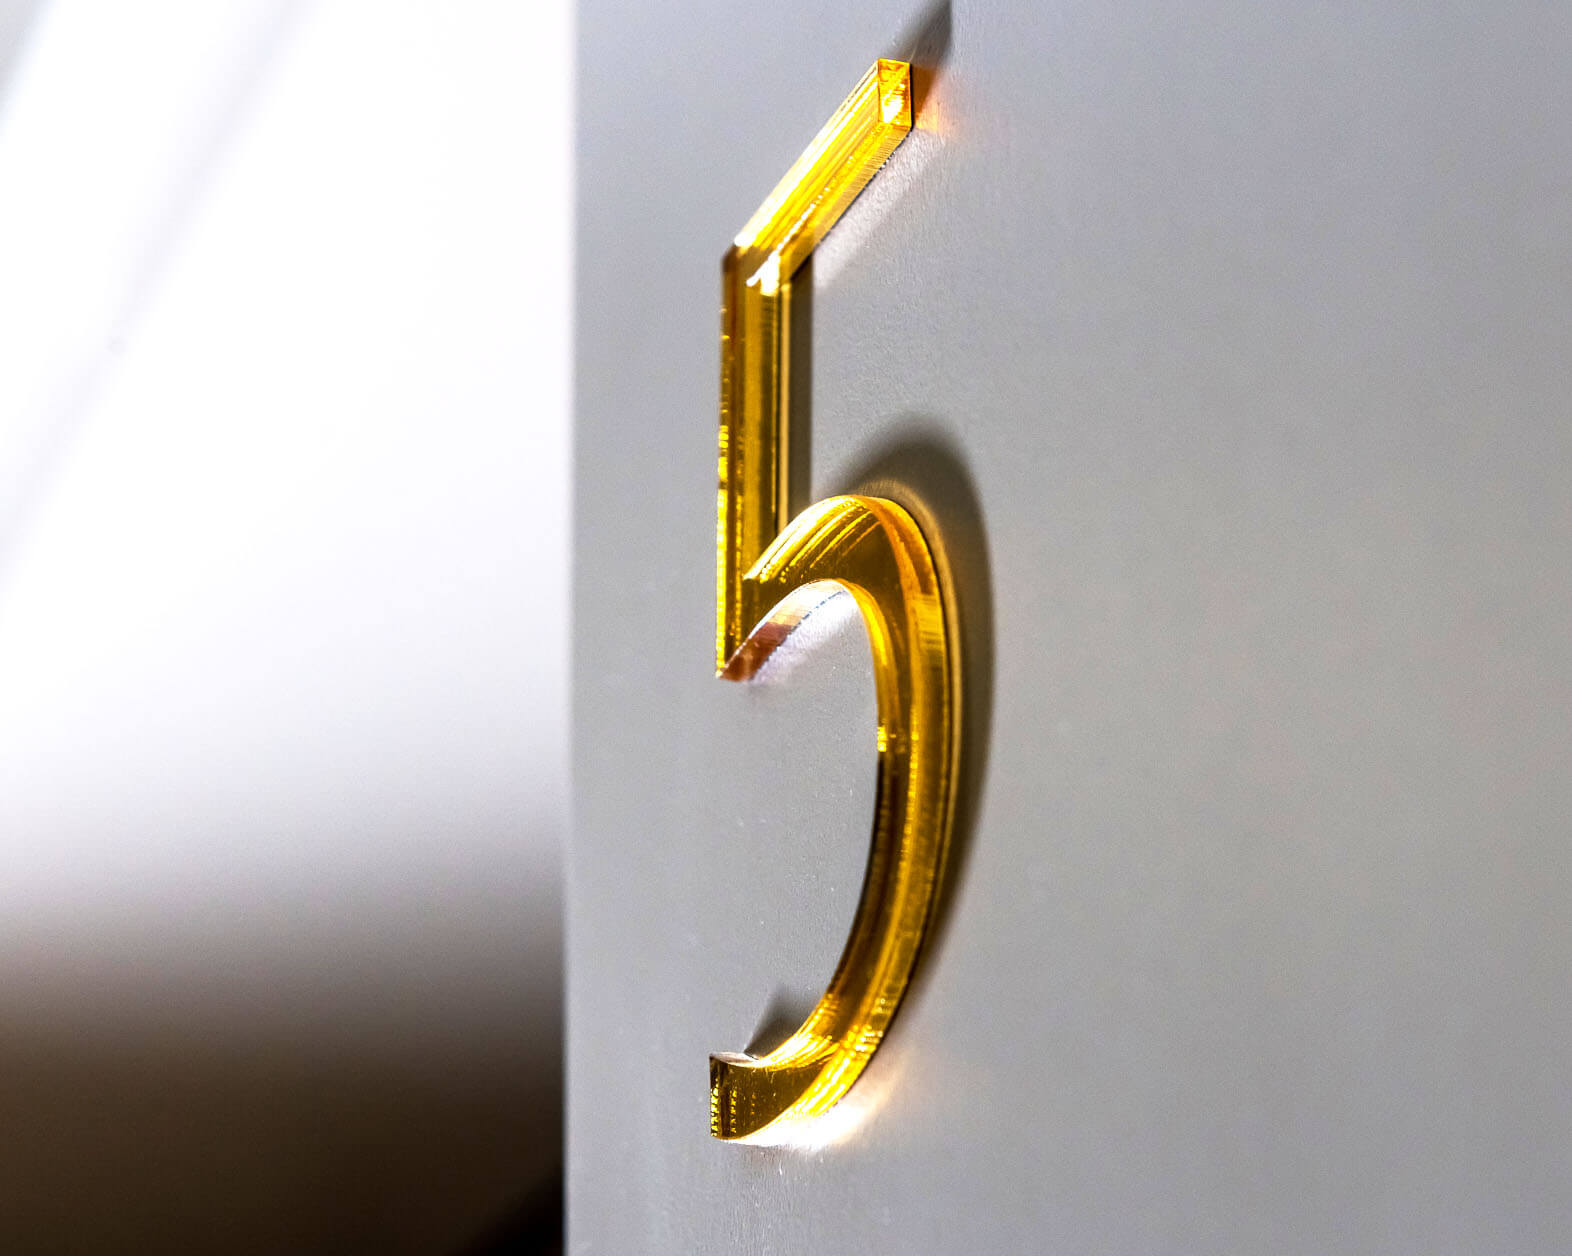 Números de 5 puertas - 5;marcado del edificio - marcado - interior - marcado - habitaciones - números